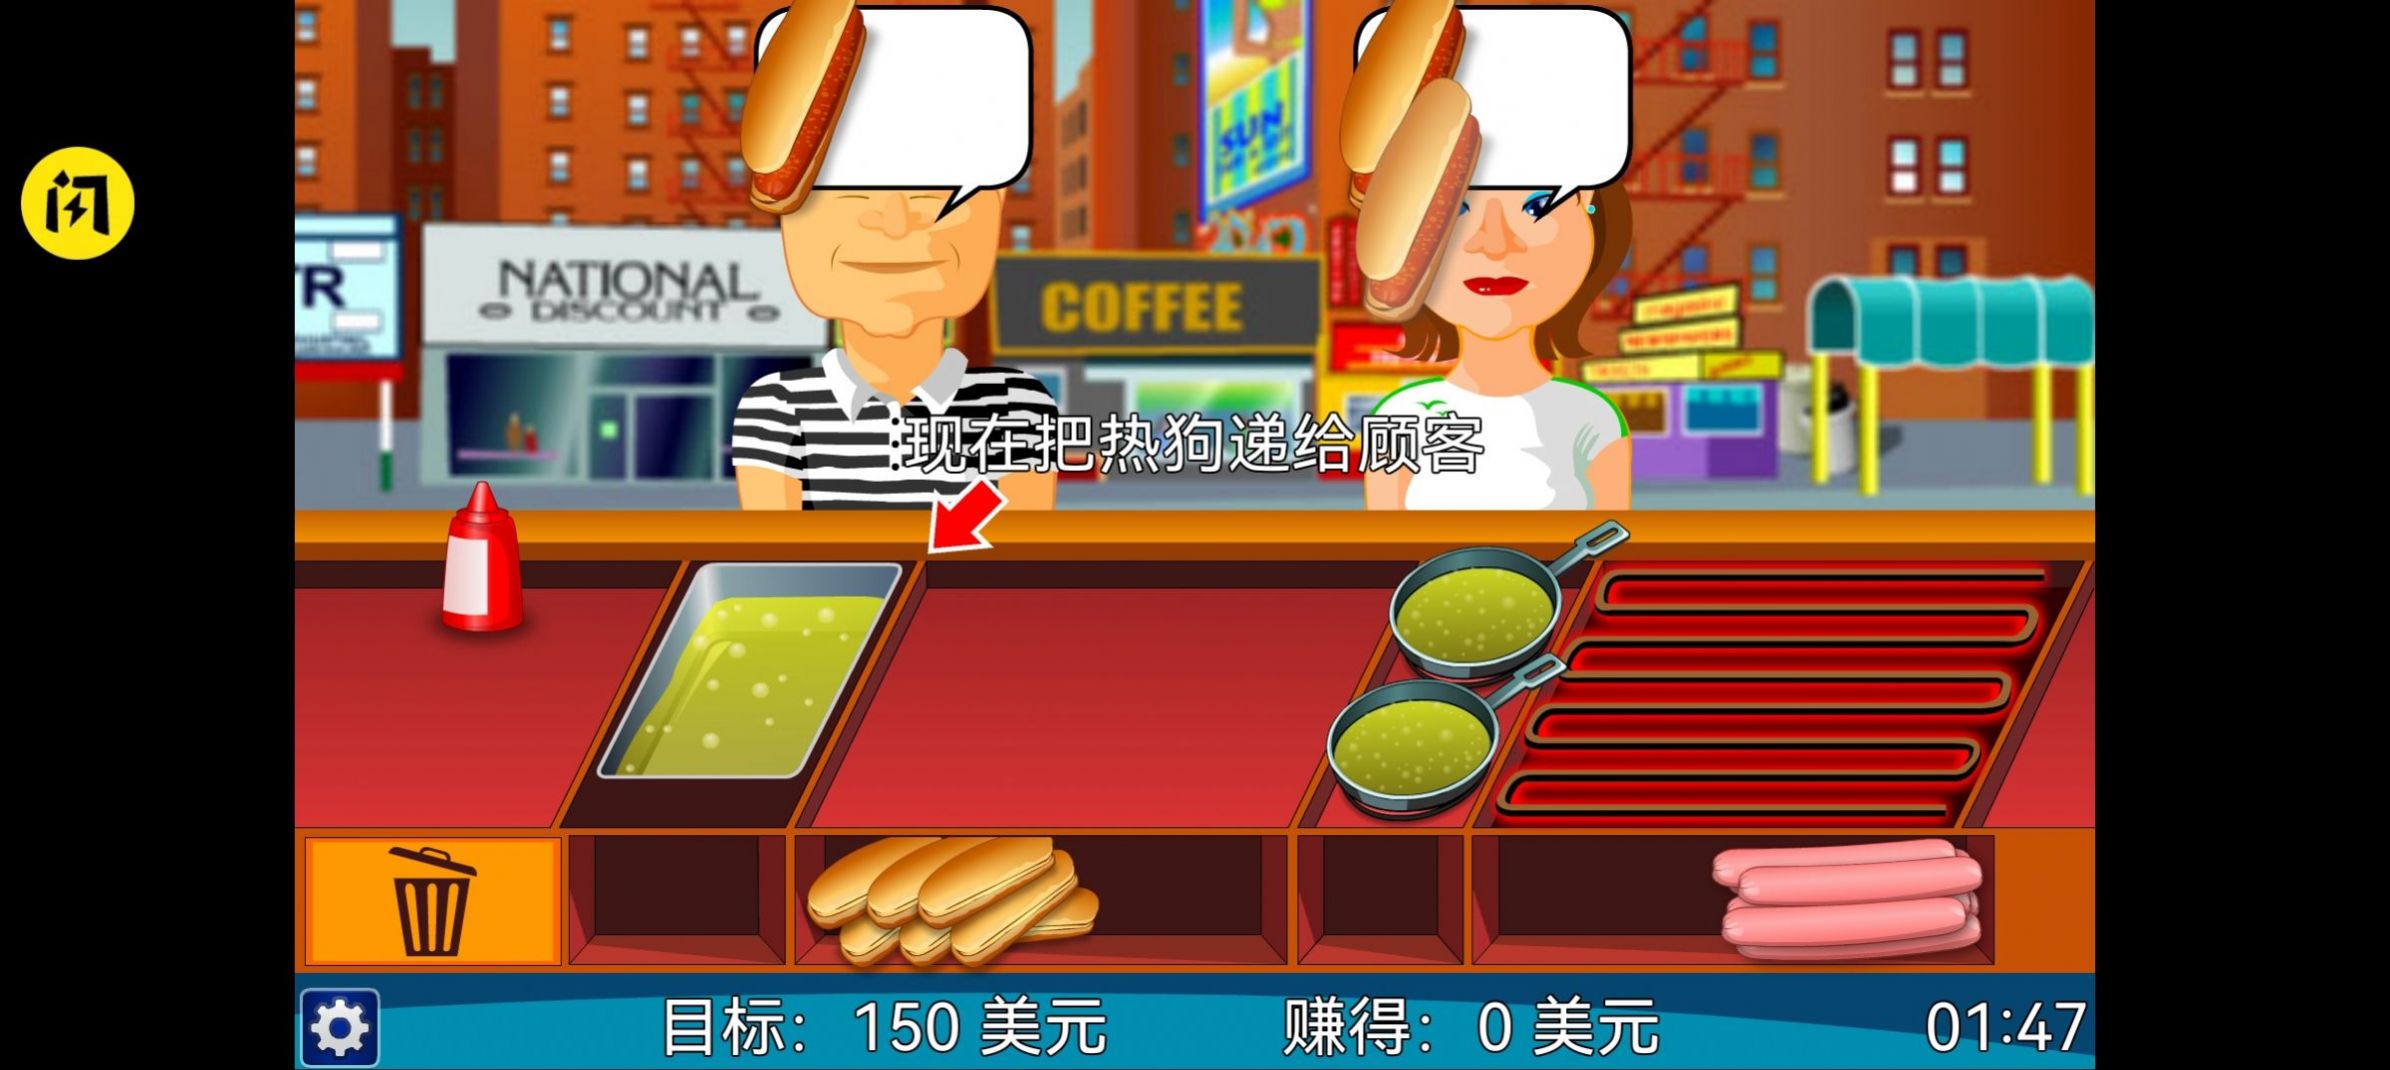 热狗餐馆最新游戏官方版图片1